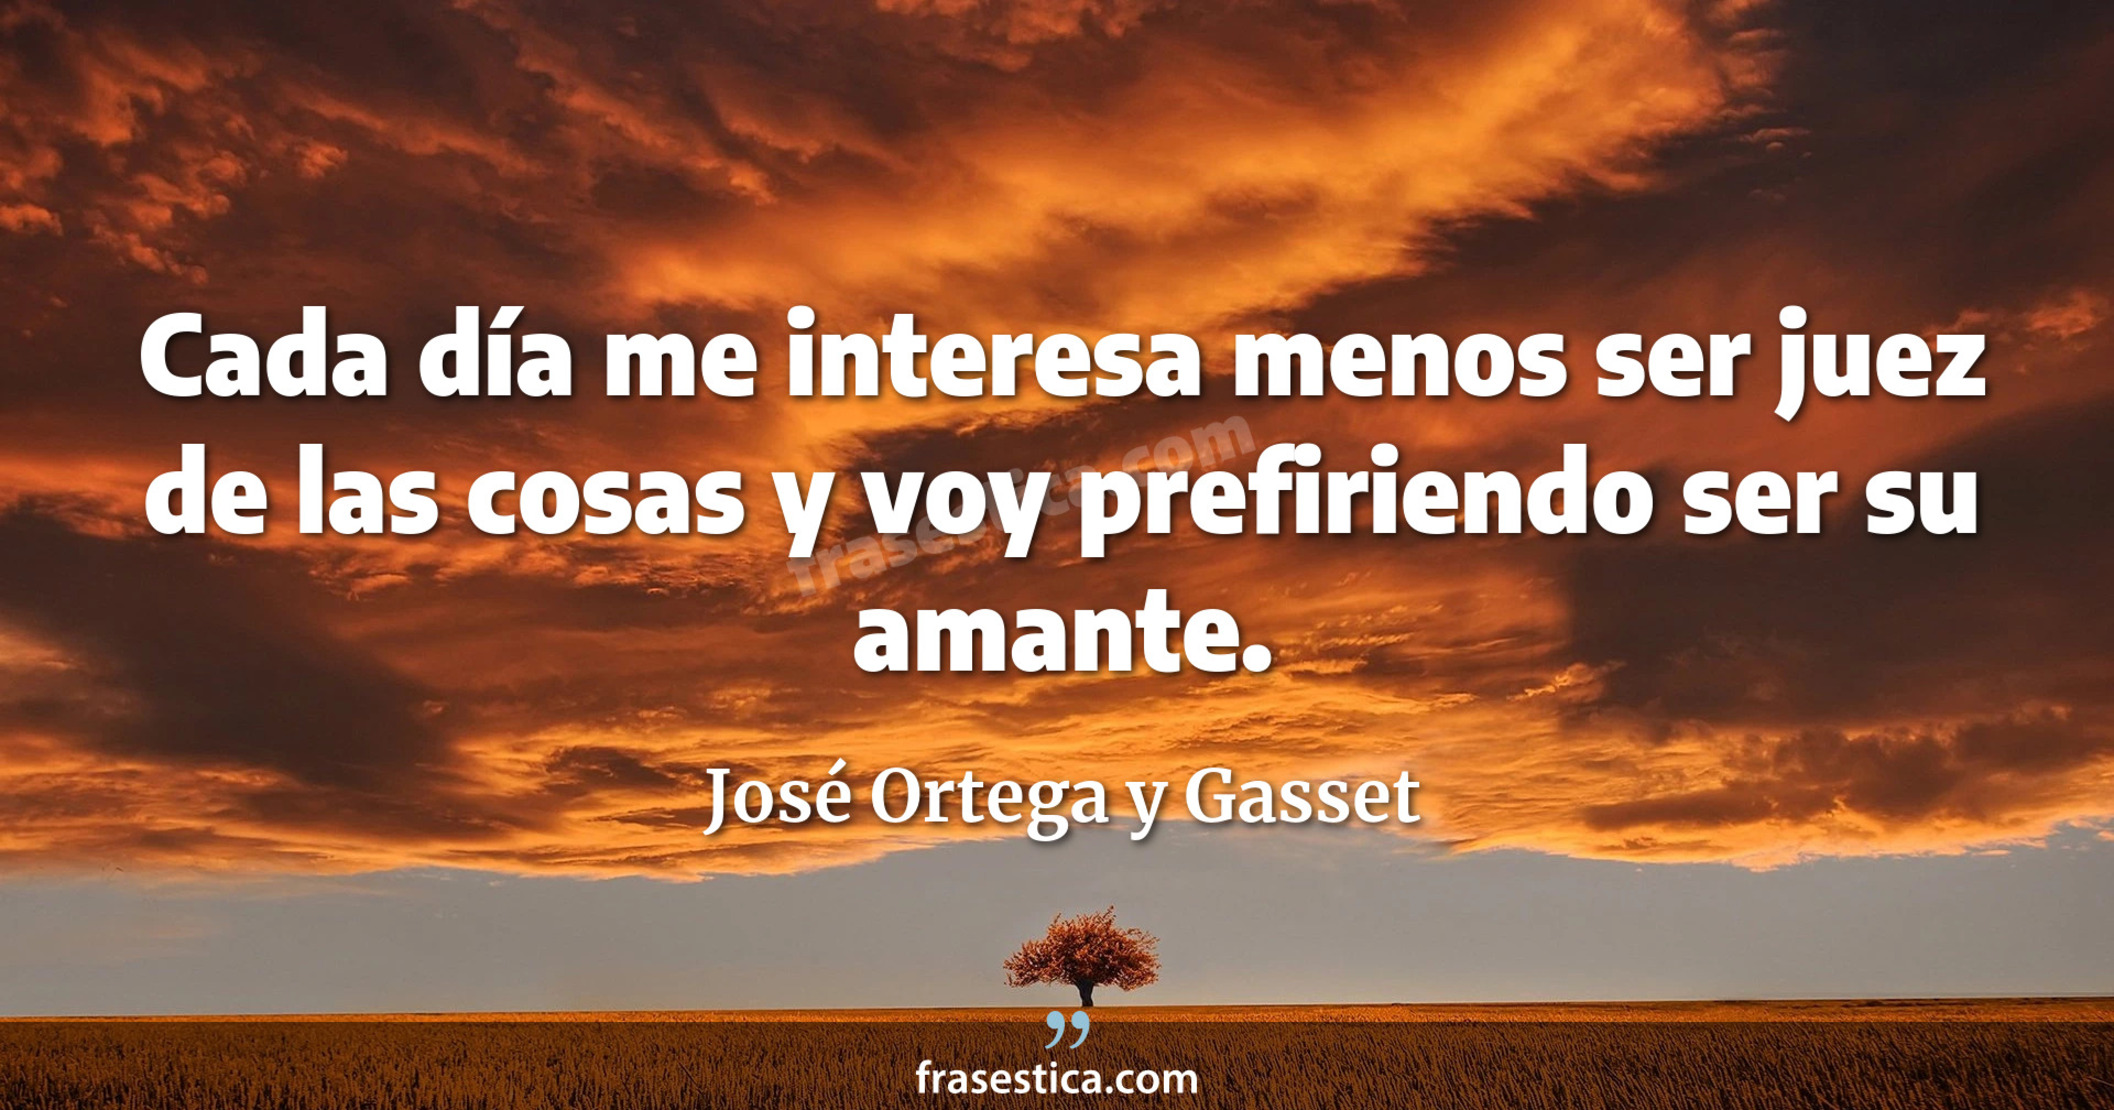 Cada día me interesa menos ser juez de las cosas y voy prefiriendo ser su amante. - José Ortega y Gasset